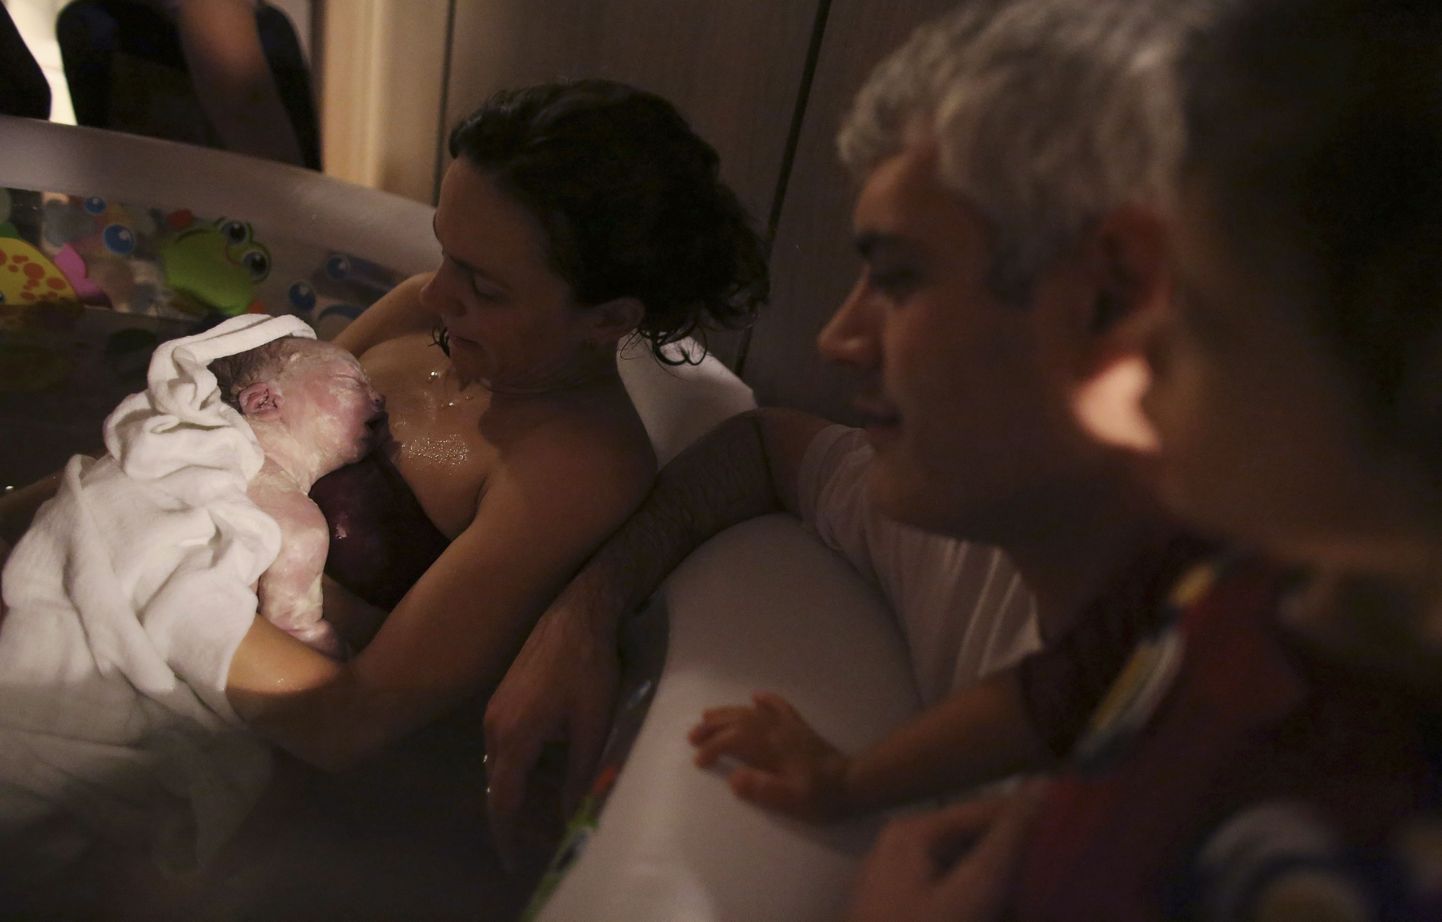 Manuela Mitre hoiab süles oma äsja sündinud poega Gaeli. Manuela otsustas sünnitada soojas vees, et beebil oleks sündides kergem kohaneda. Pilt on tehtud Sao Paulos 6. novembril 2013.